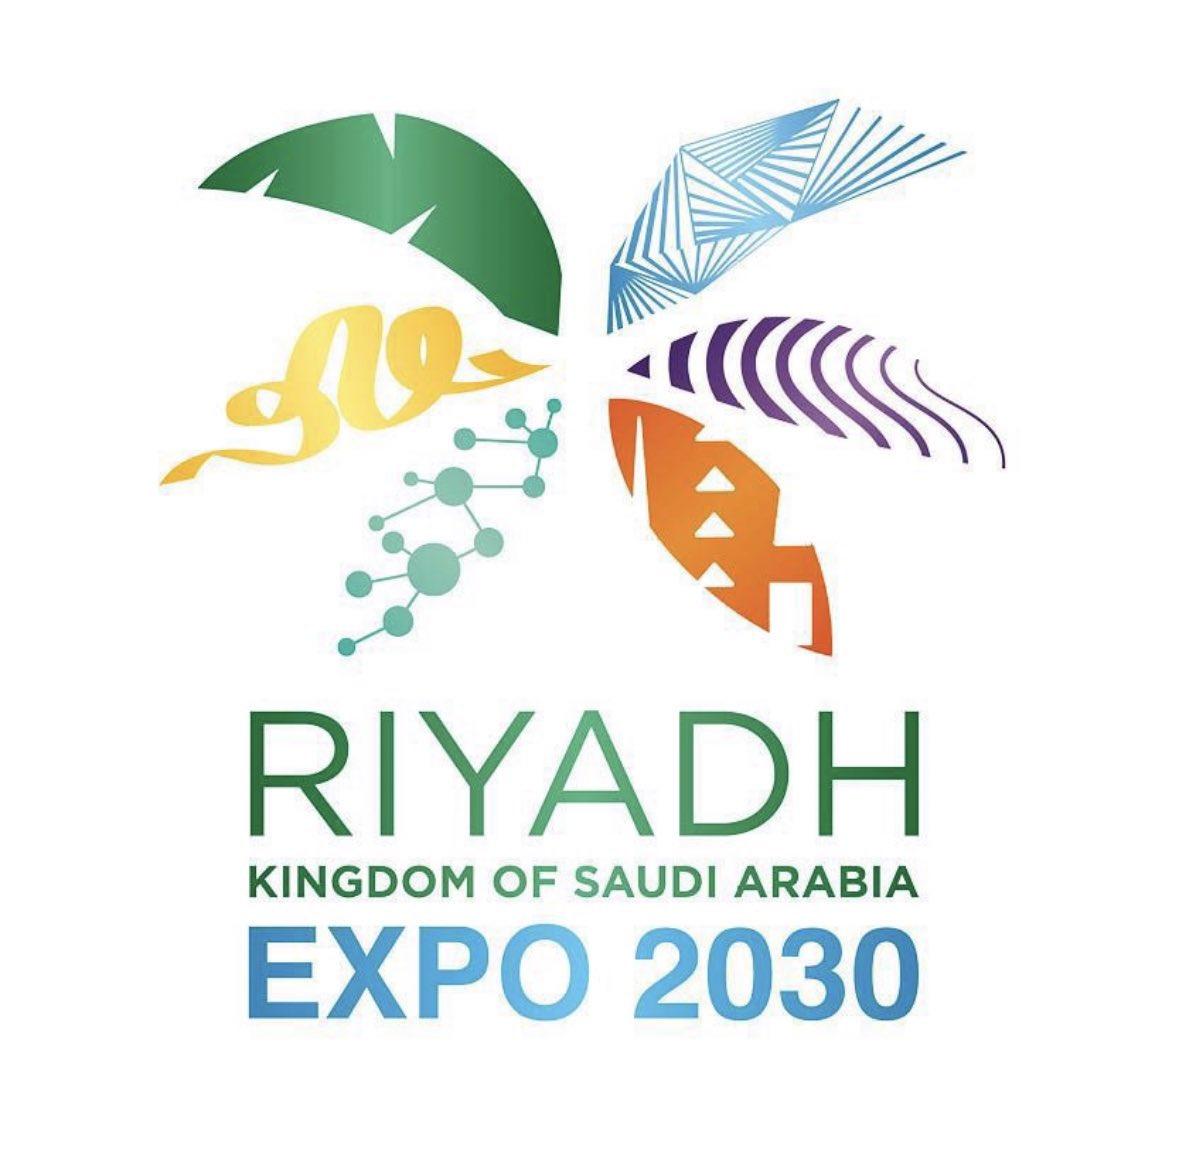 #RiyadhIsReady 
#RiyadhExpo2030  
#BIE173